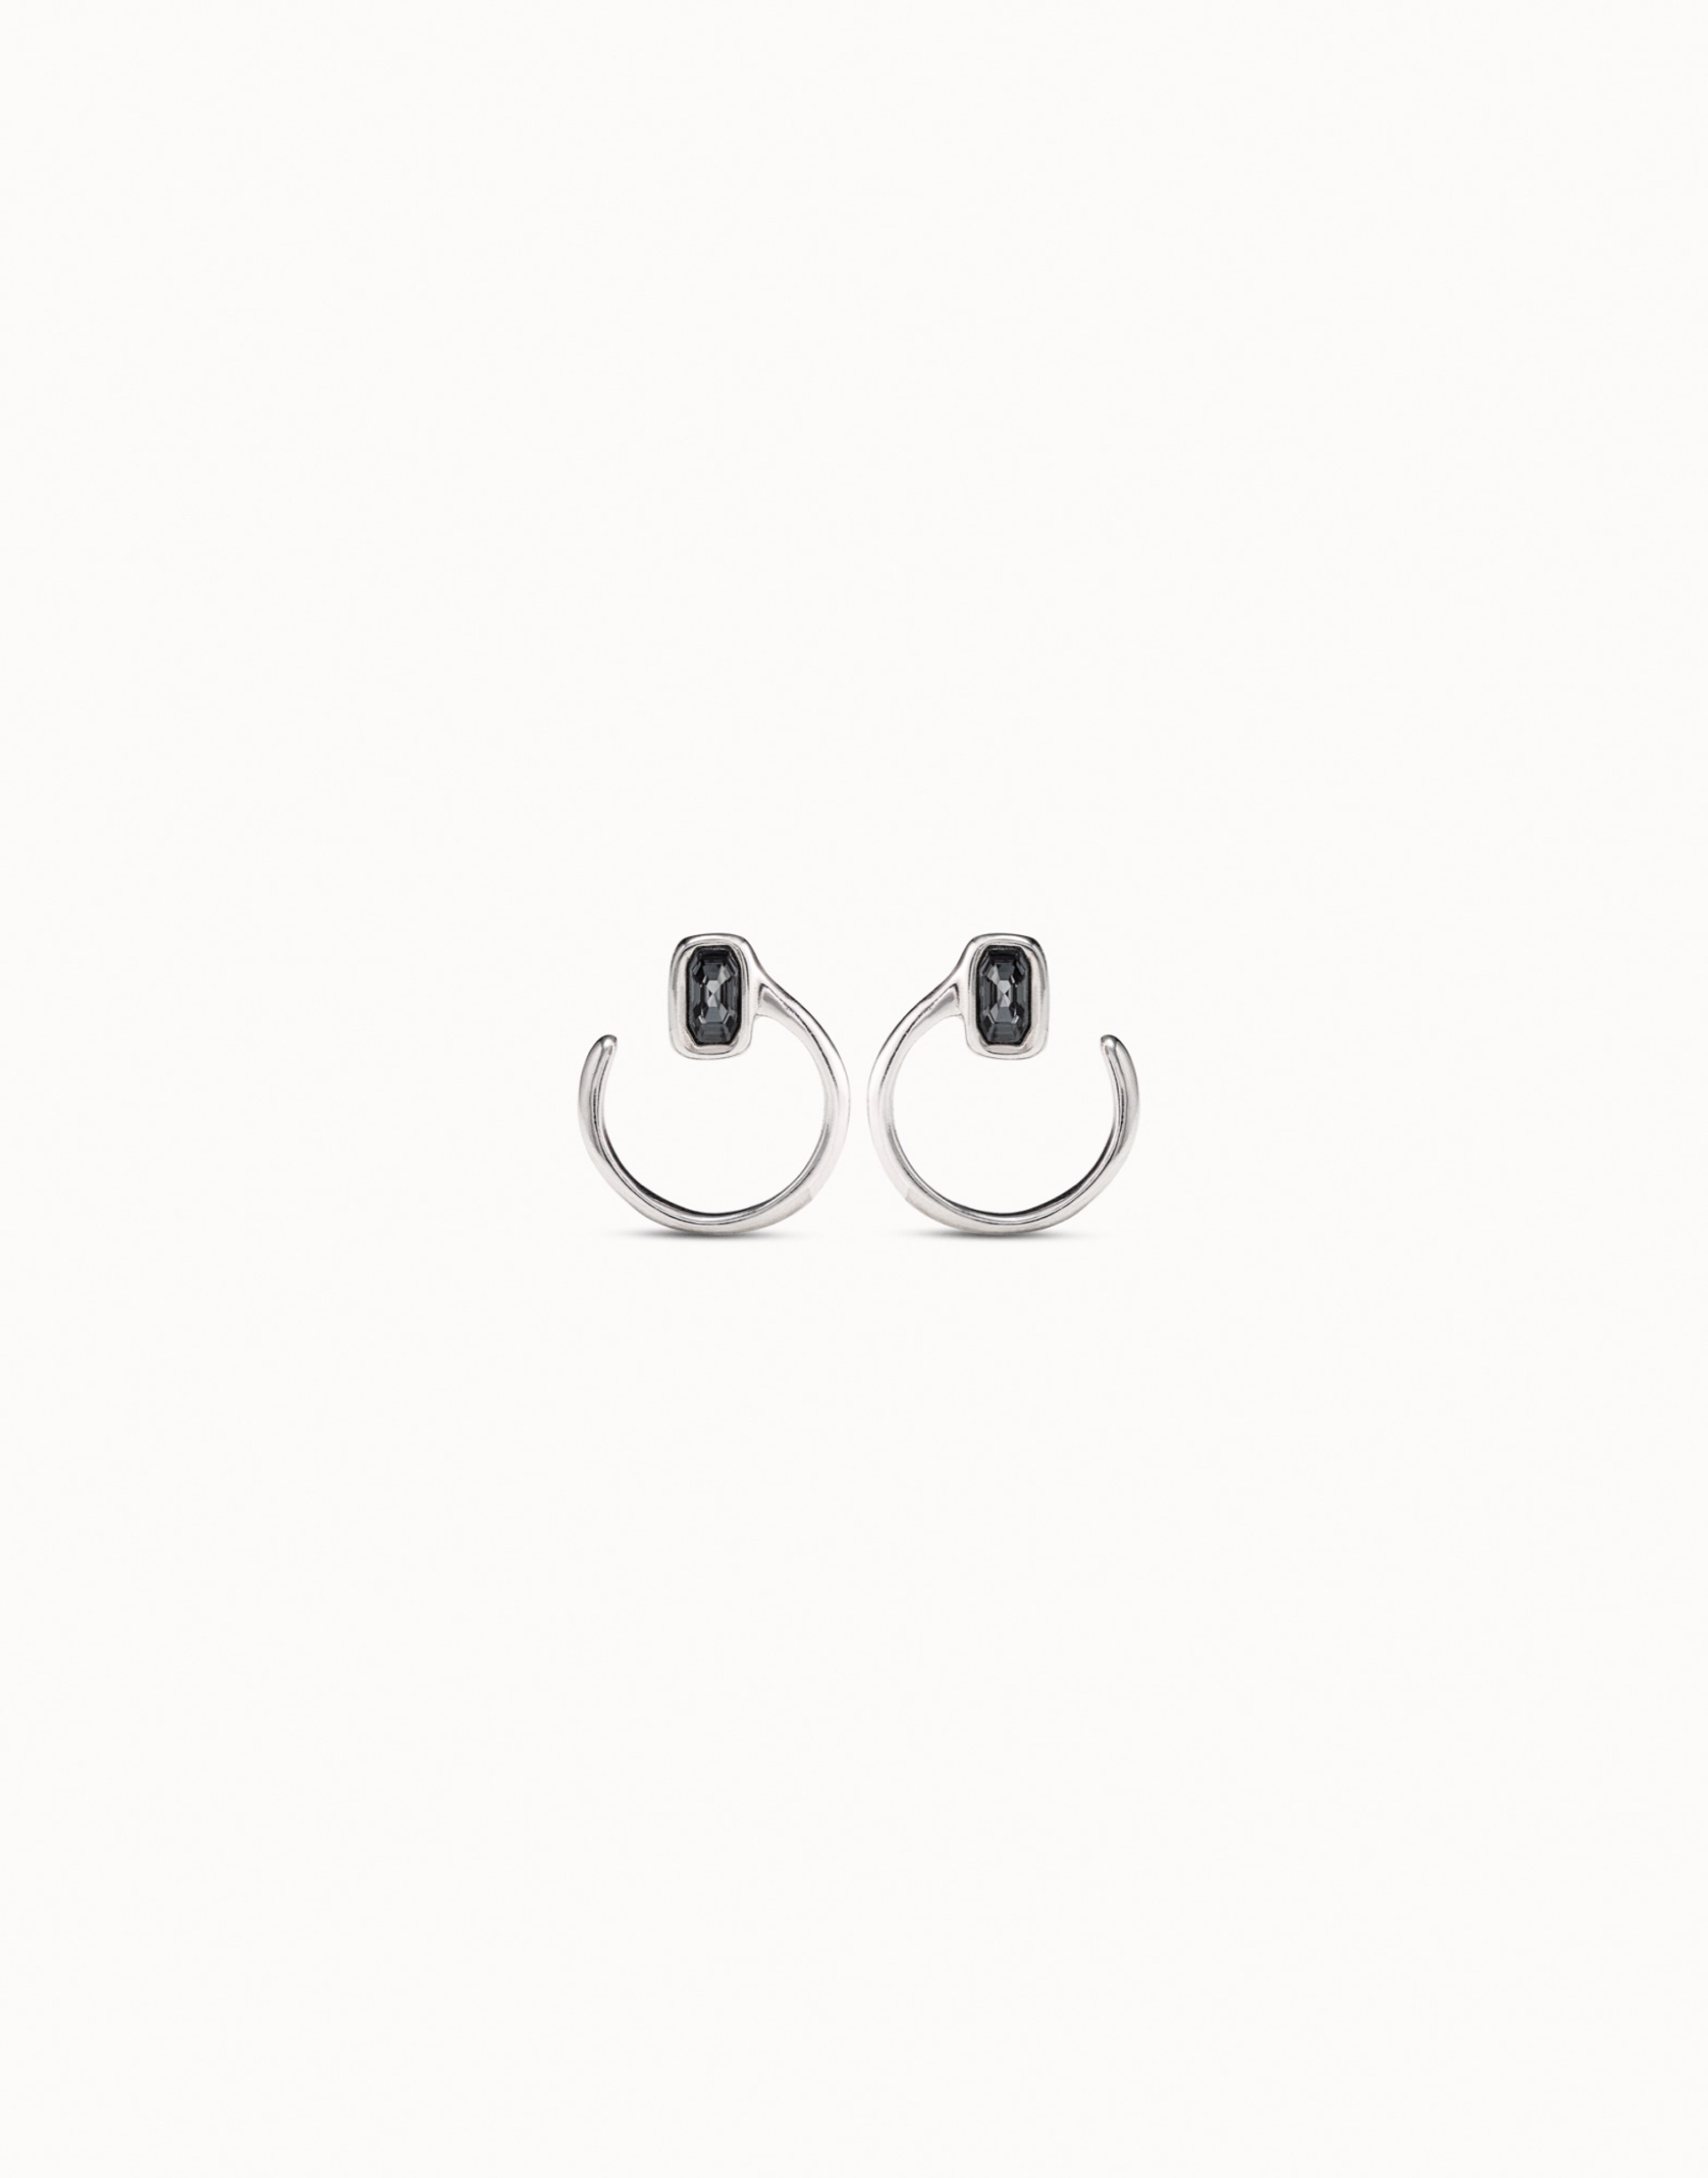 Cobra Earrings by UNO DE 50